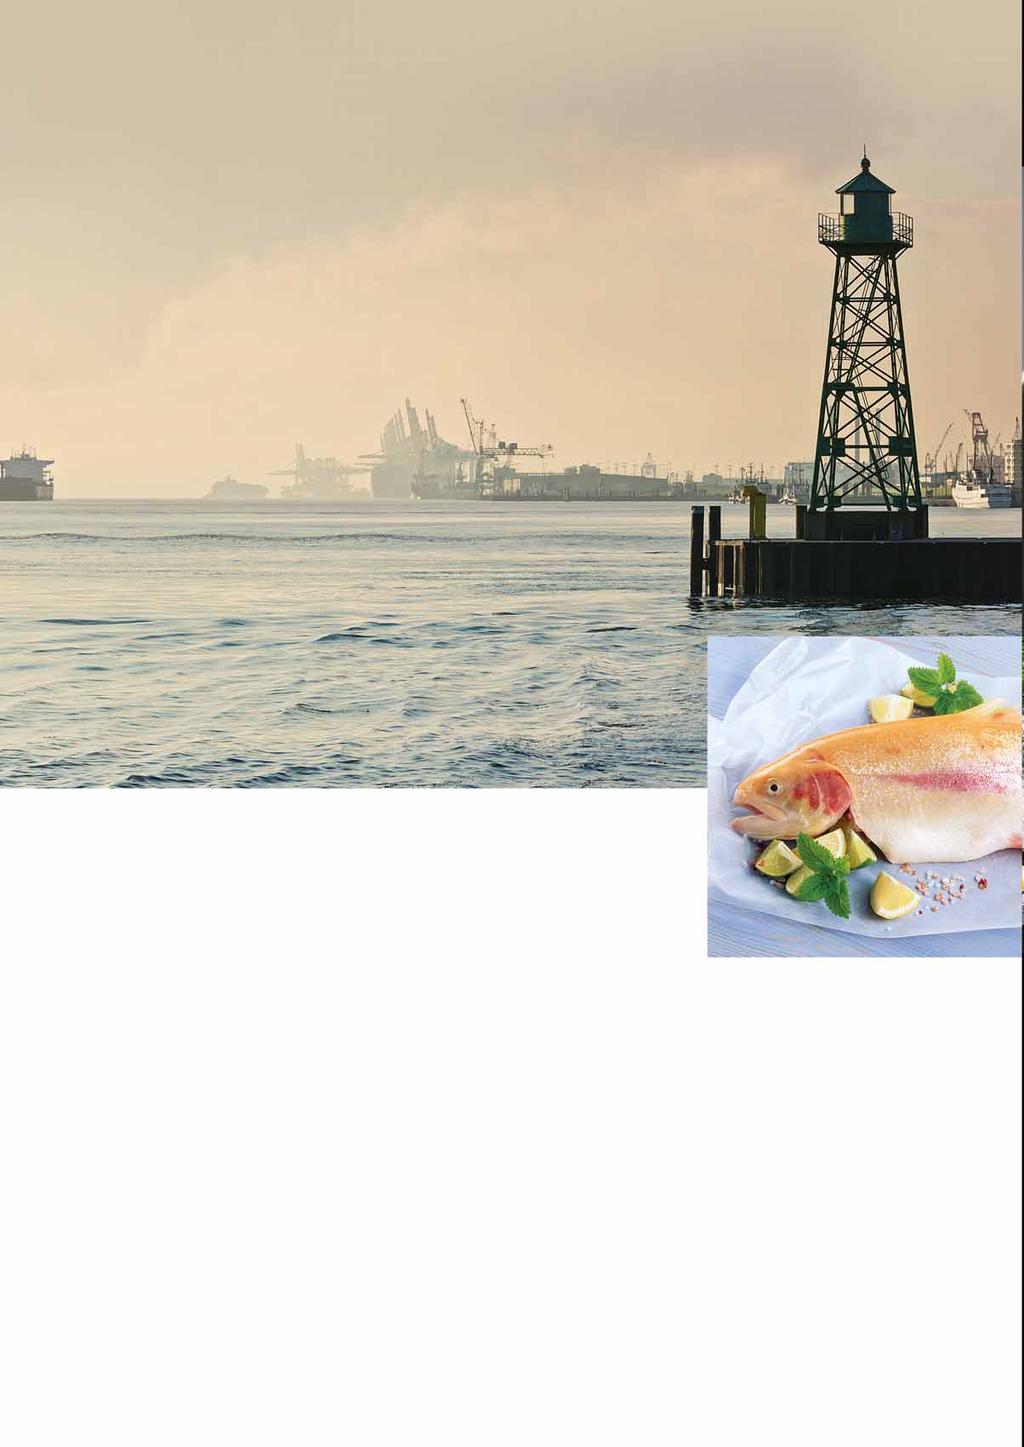 TRANSGOURMET SEAFOOD JAKOŚĆ I ŚWIEŻOŚĆ BEZ KOMPROMISÓW Do Transgourmet Seafood w Bremerhaven trafiają ryby z całego globu, a następnie są dystrybuowane do lokalizacji docelowych.